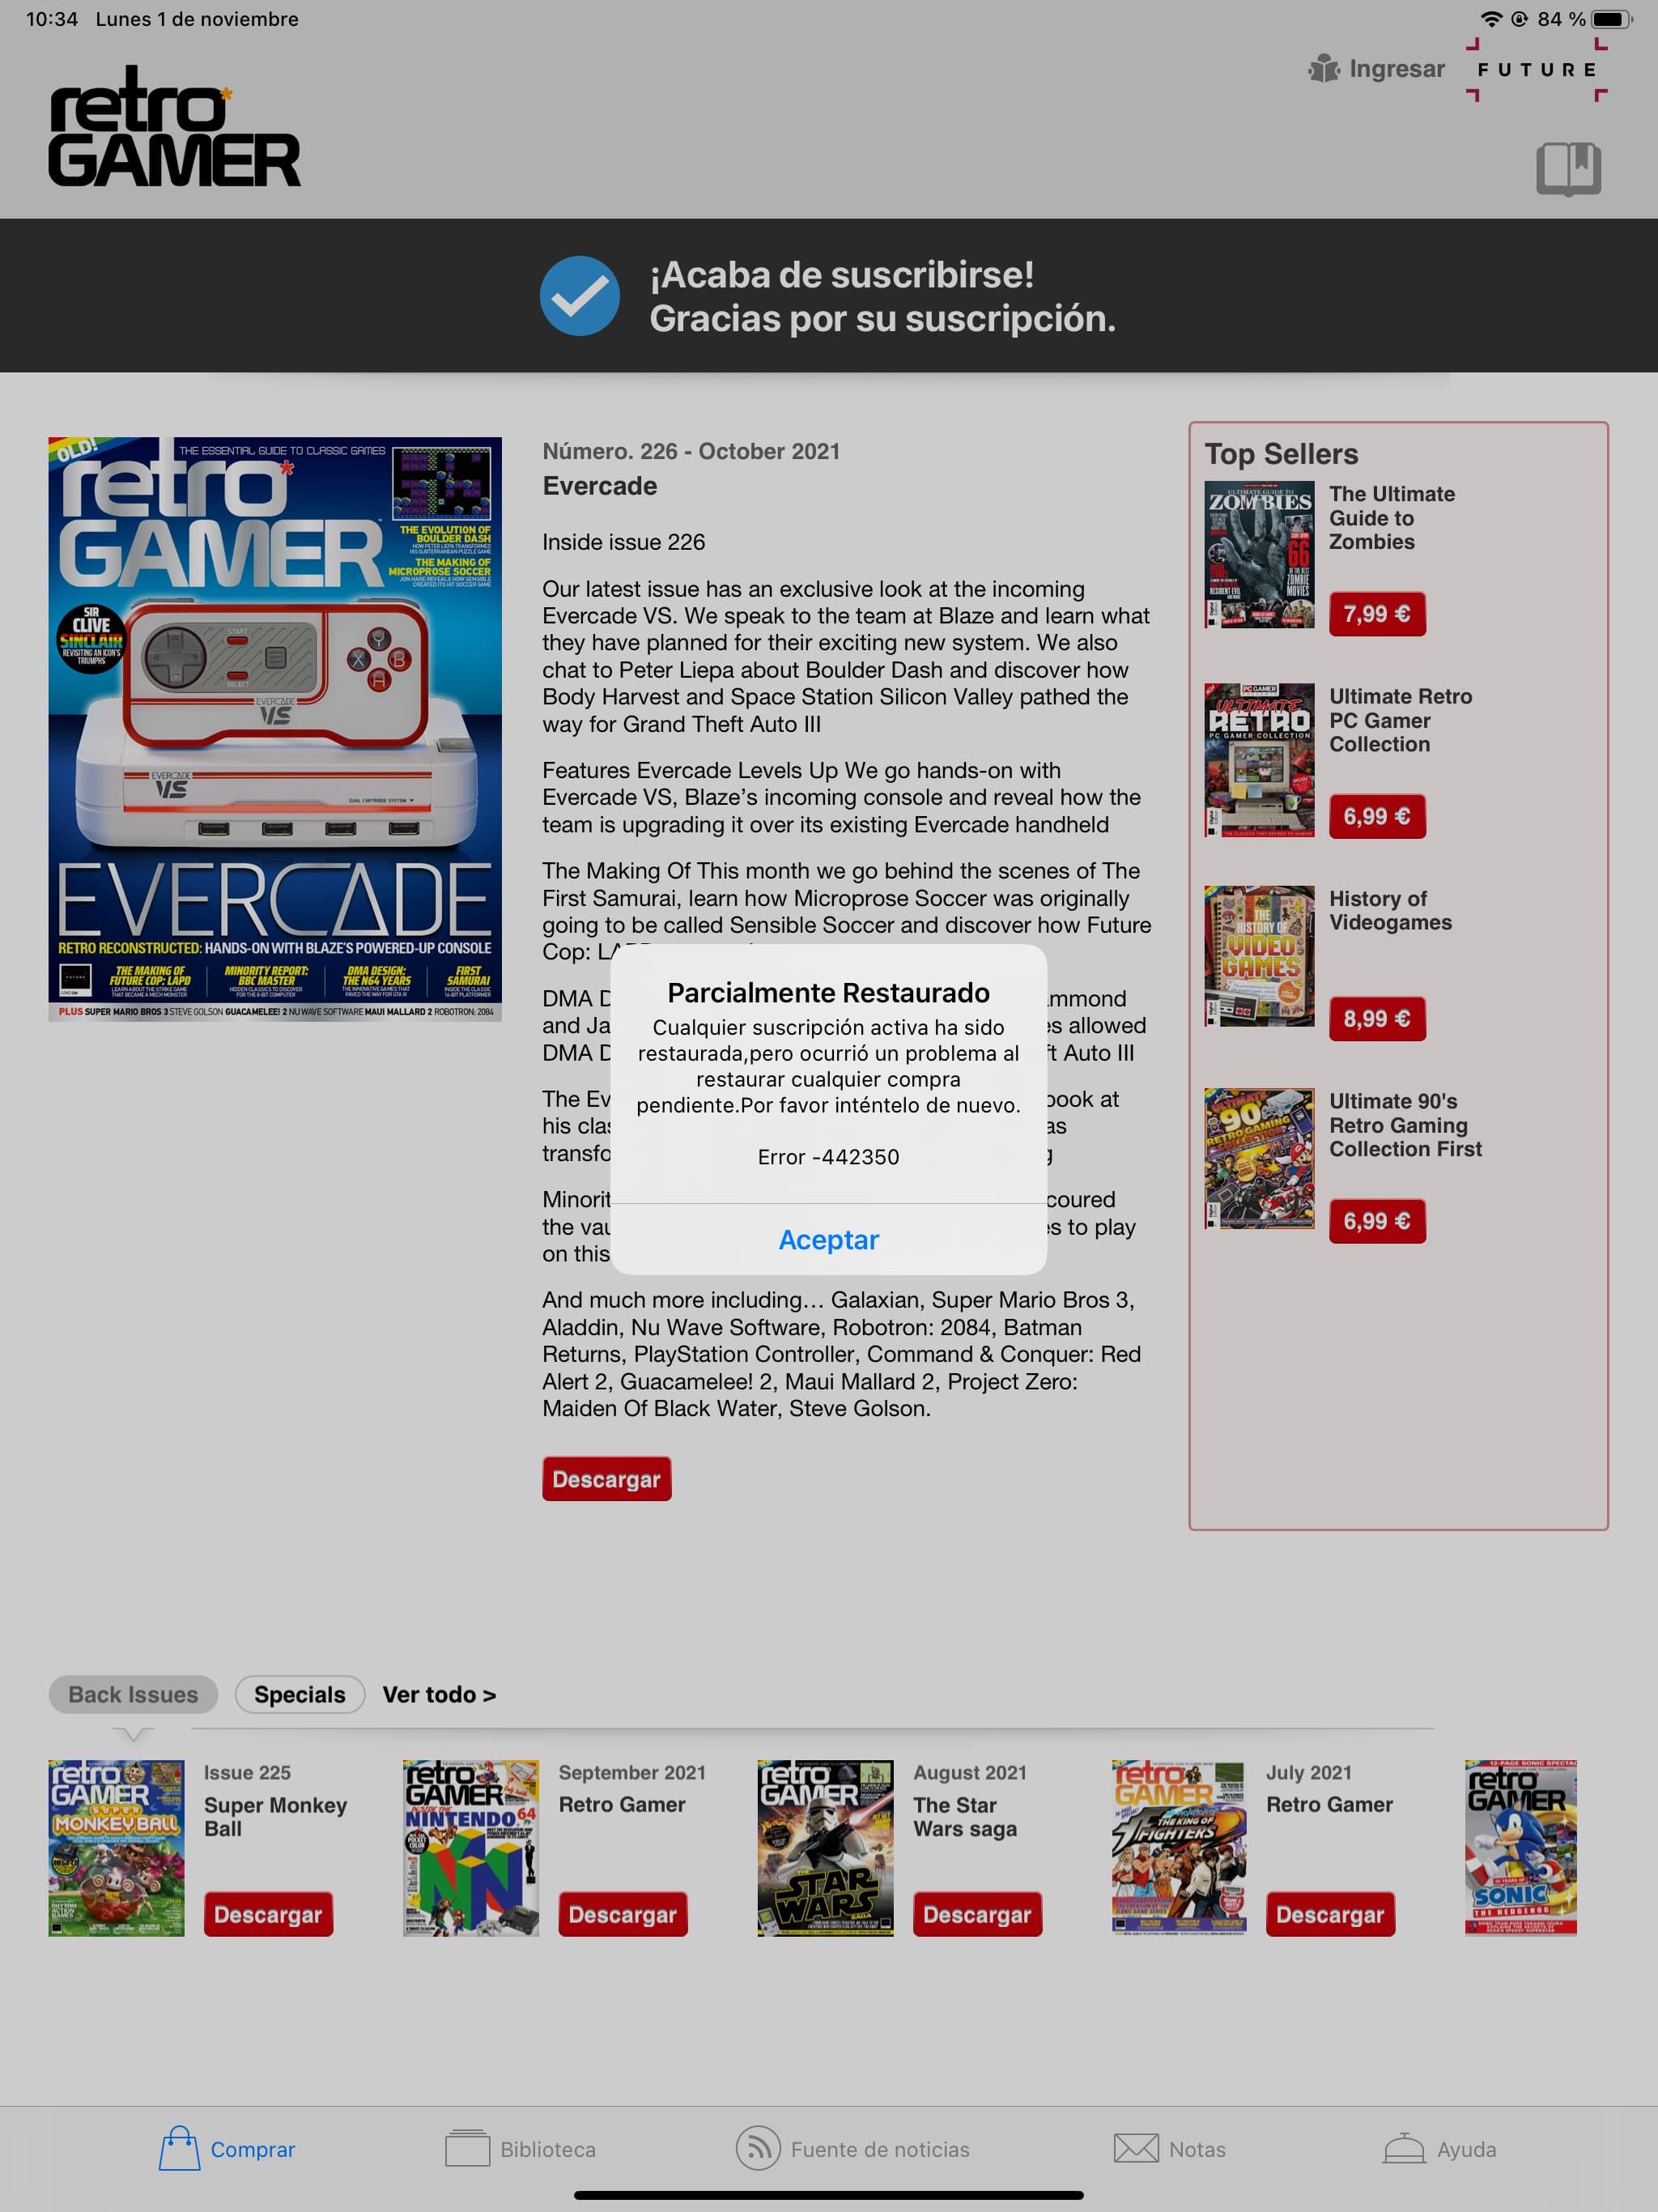 App Retro Gamer - Restaurado parcialmente el acceso a los ejemplares